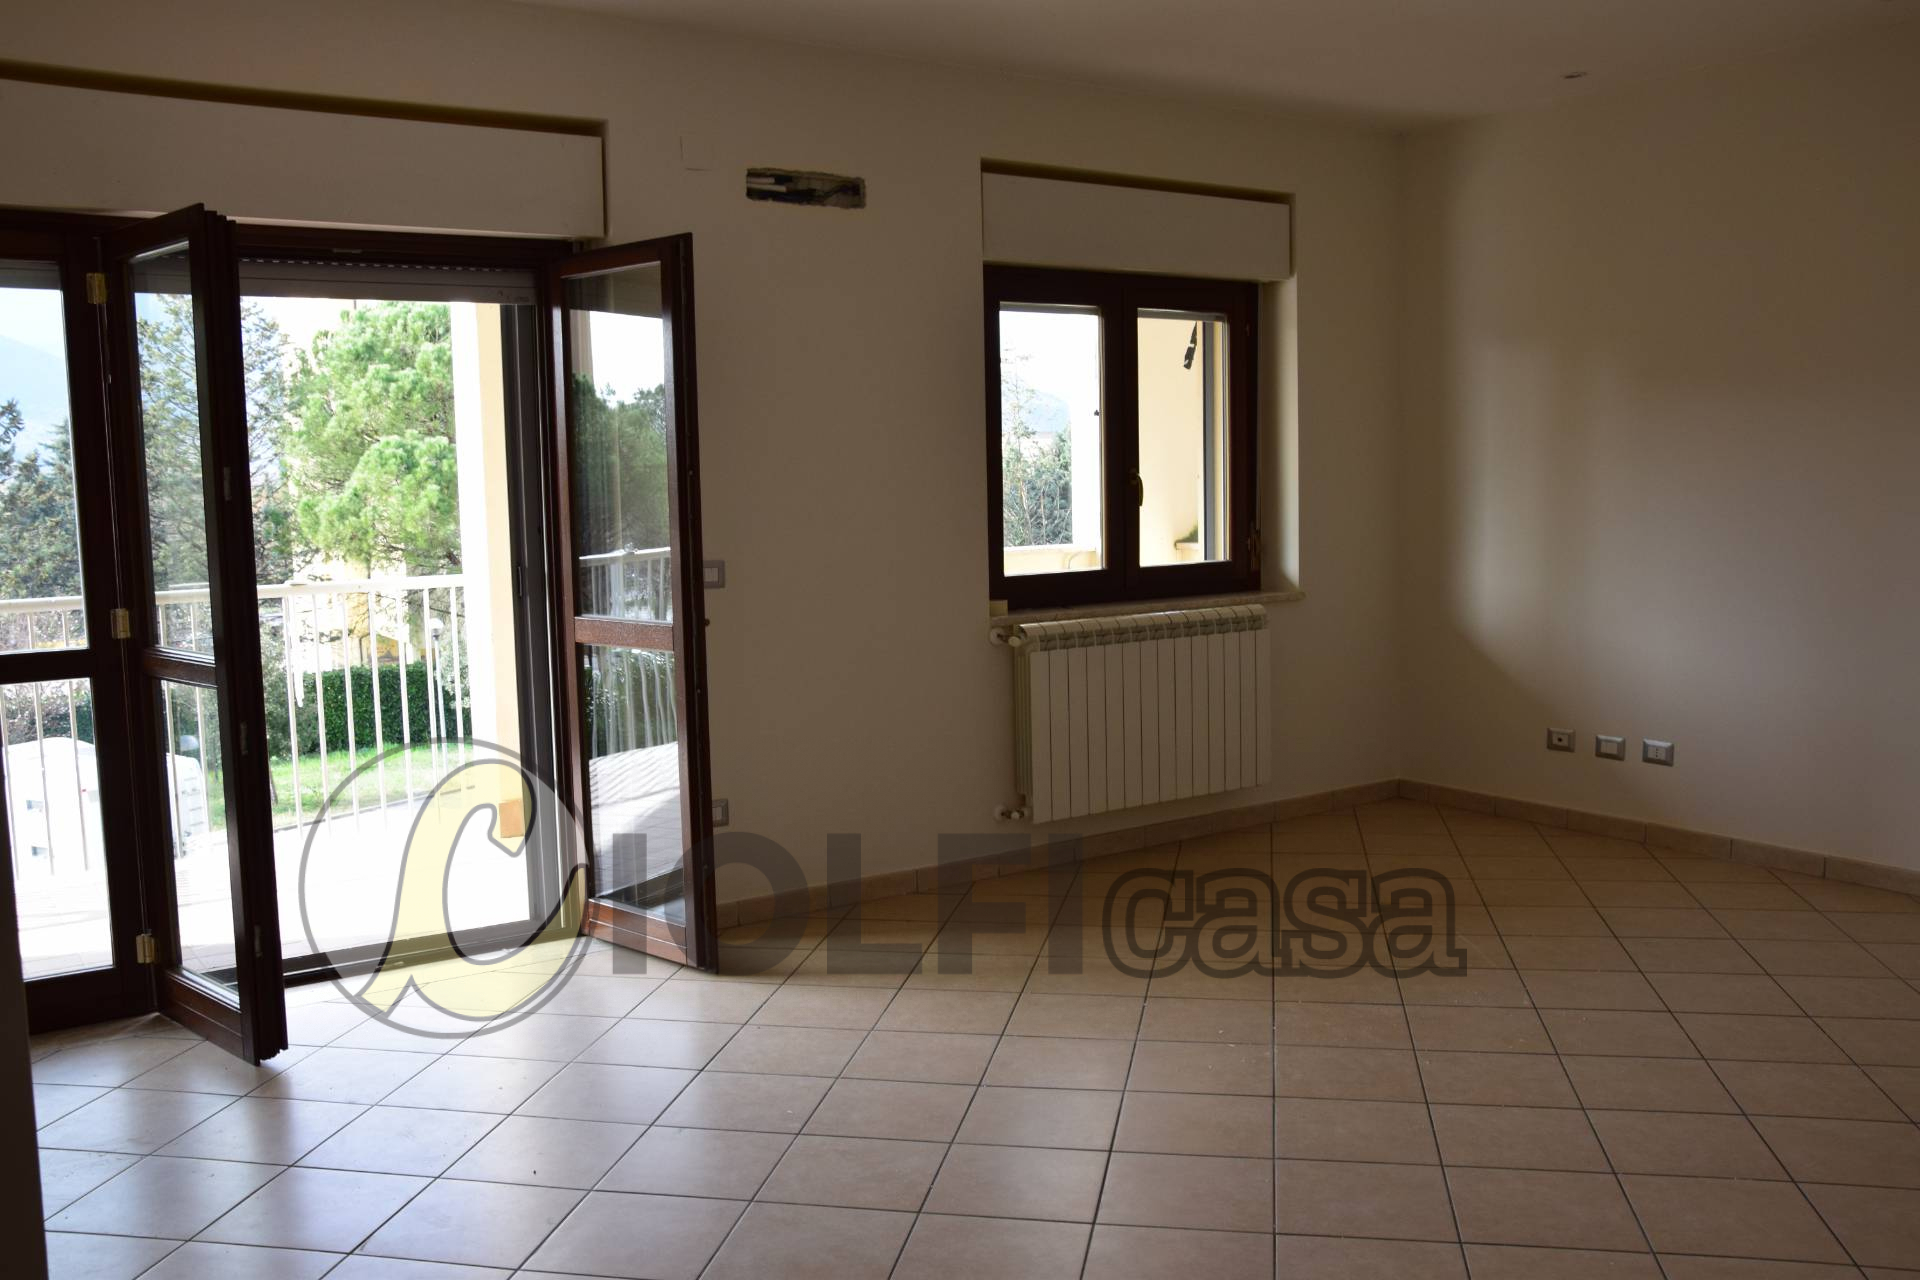 Appartamento in affitto a Cassino, 4 locali, zona Località: S.Antonino, prezzo € 500 | CambioCasa.it